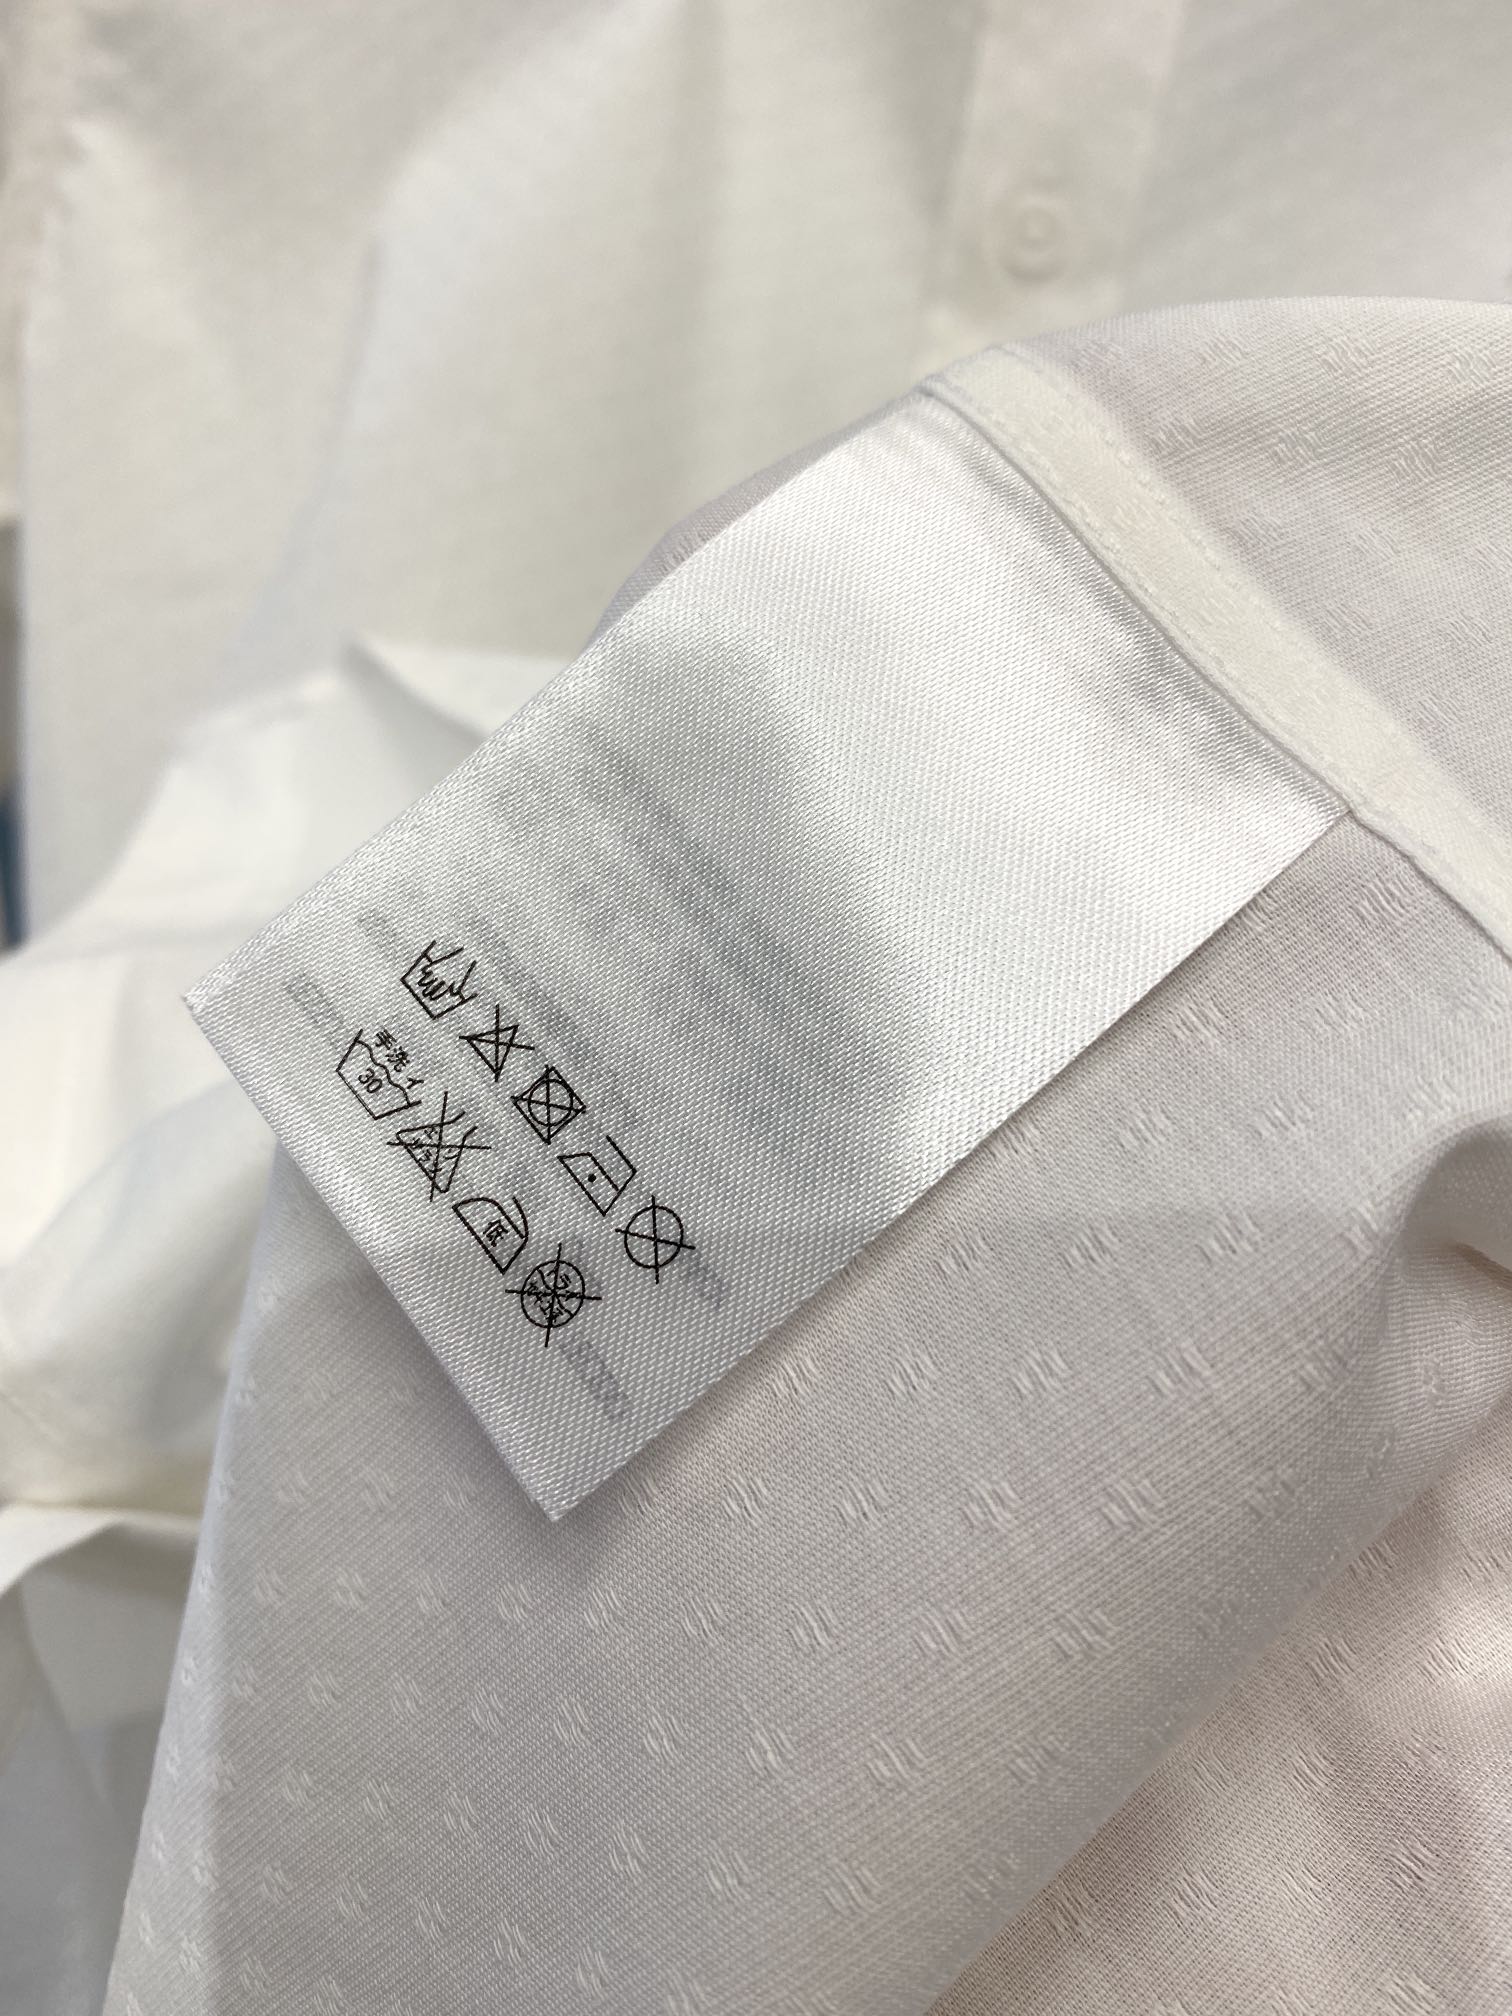 爱马仕2024新款衬衫打造时装艺术感立体剪裁修身版型上身效果很帅气微彰显品位整体细节可以对比效果非常有型